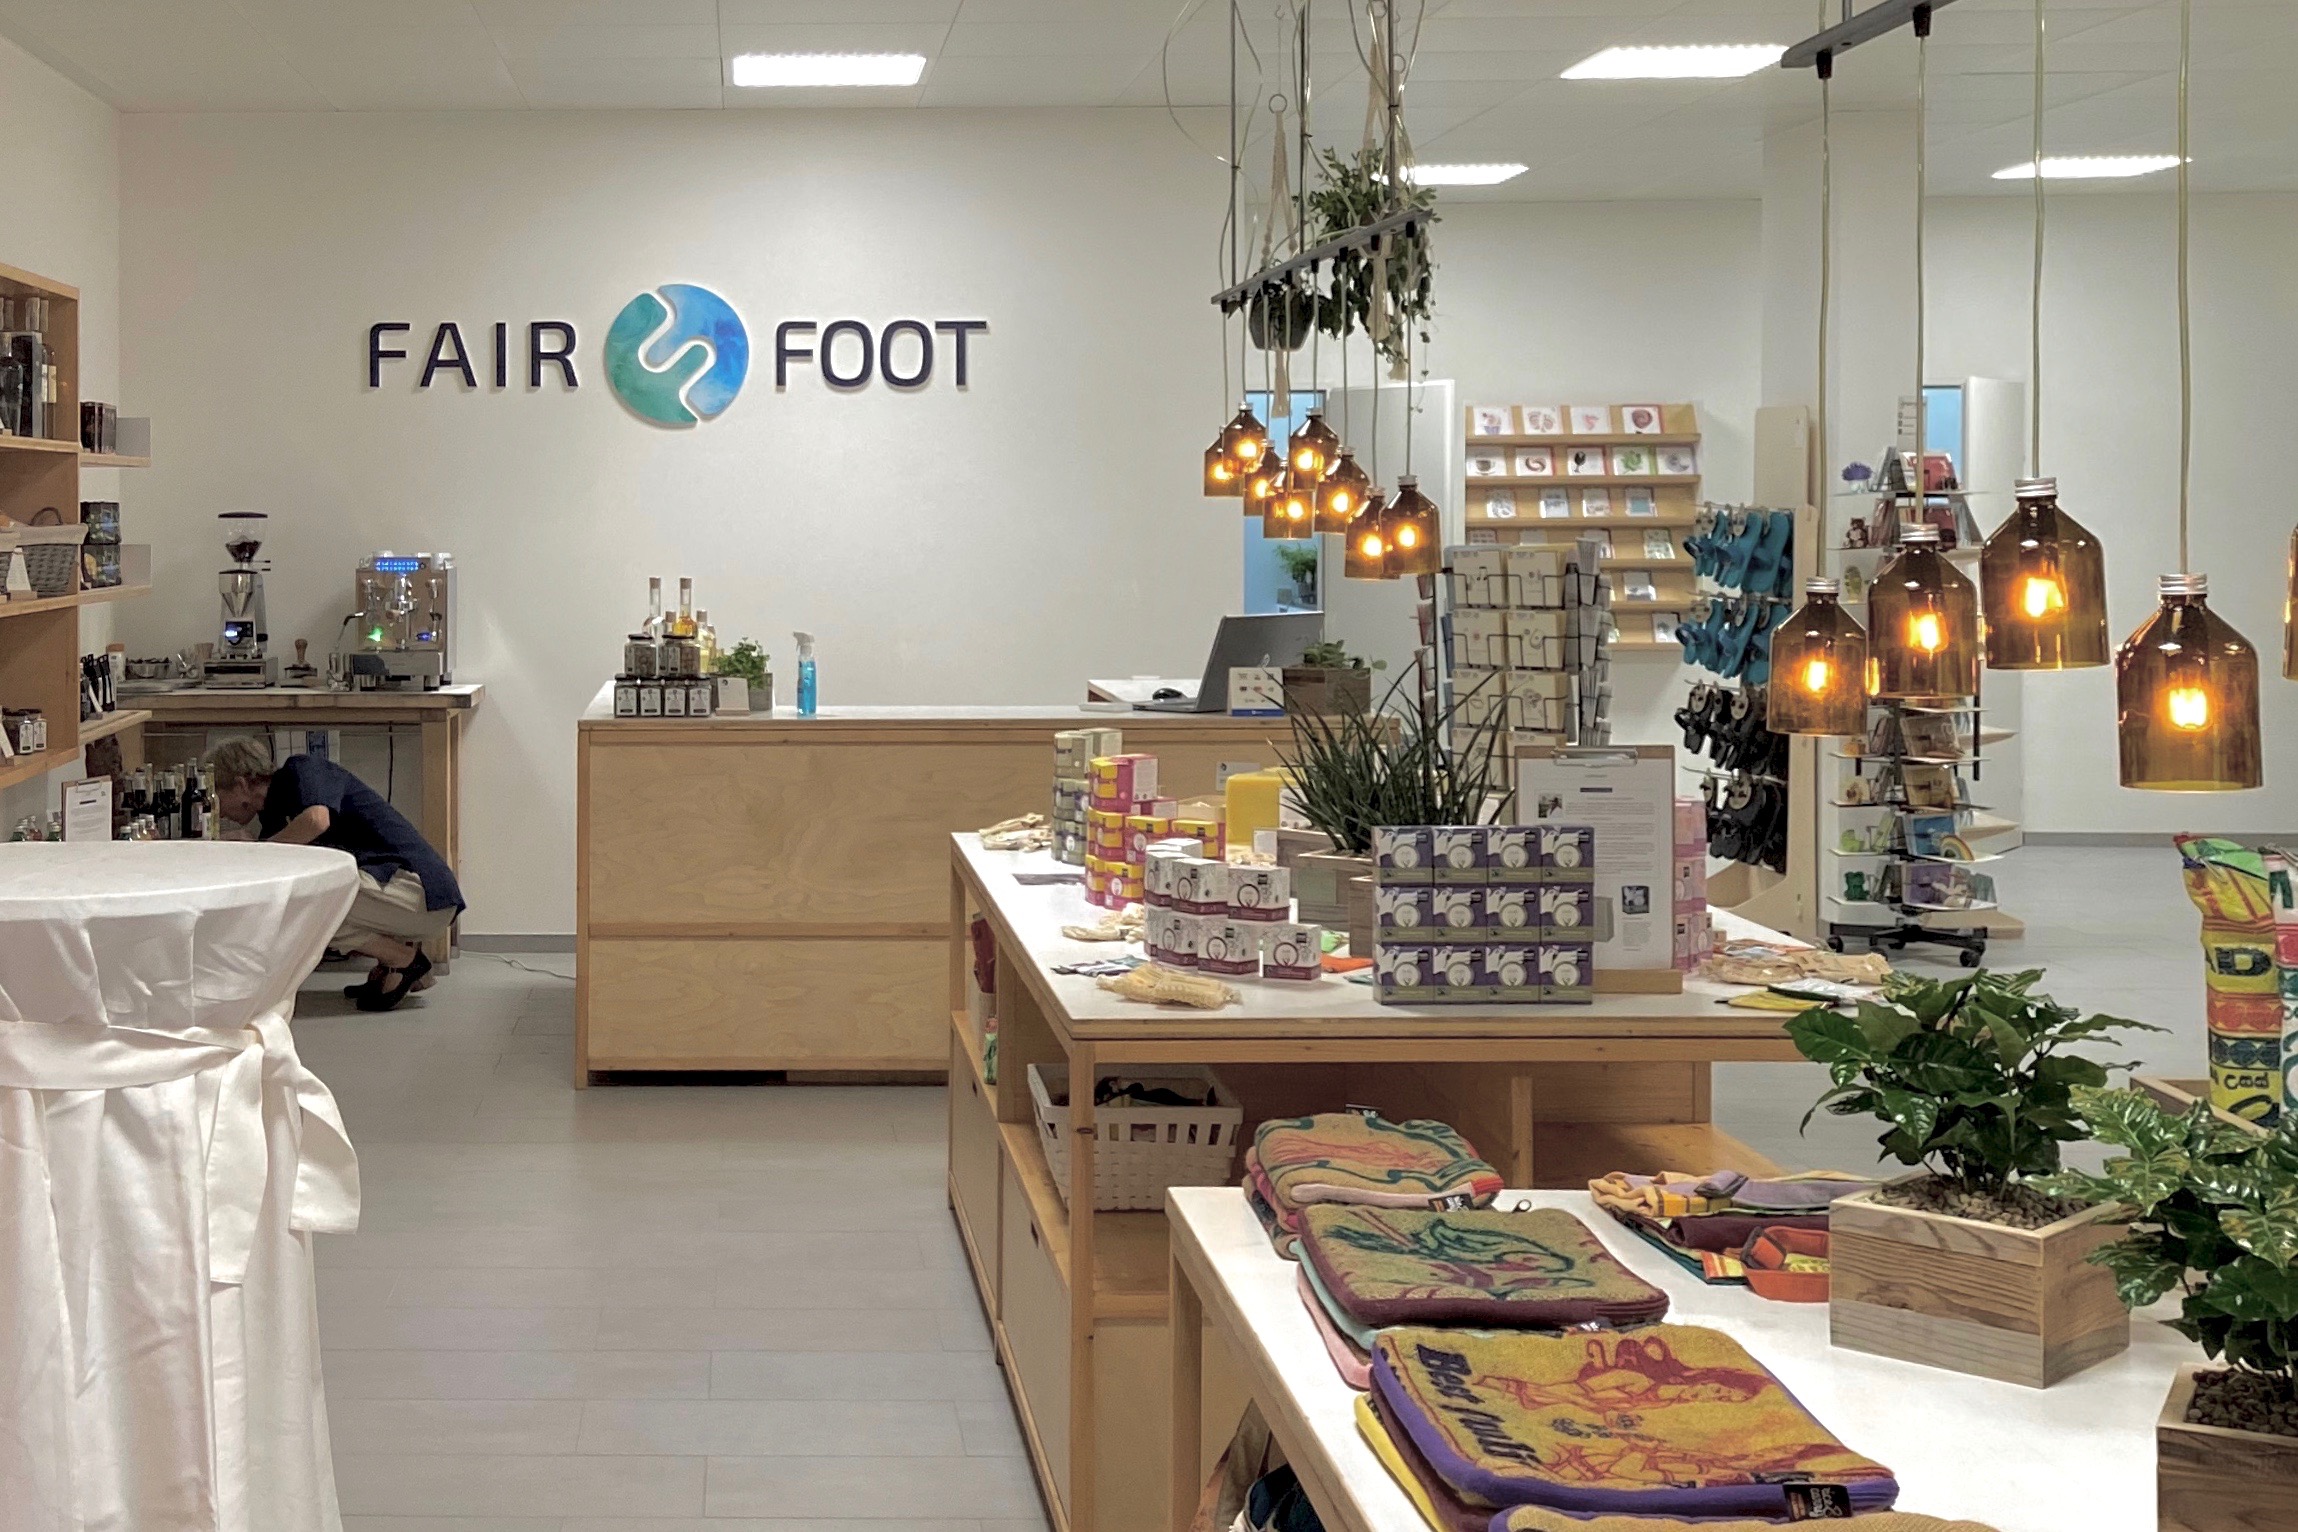 Laden Fairfoot, Konzept und Umsetzung